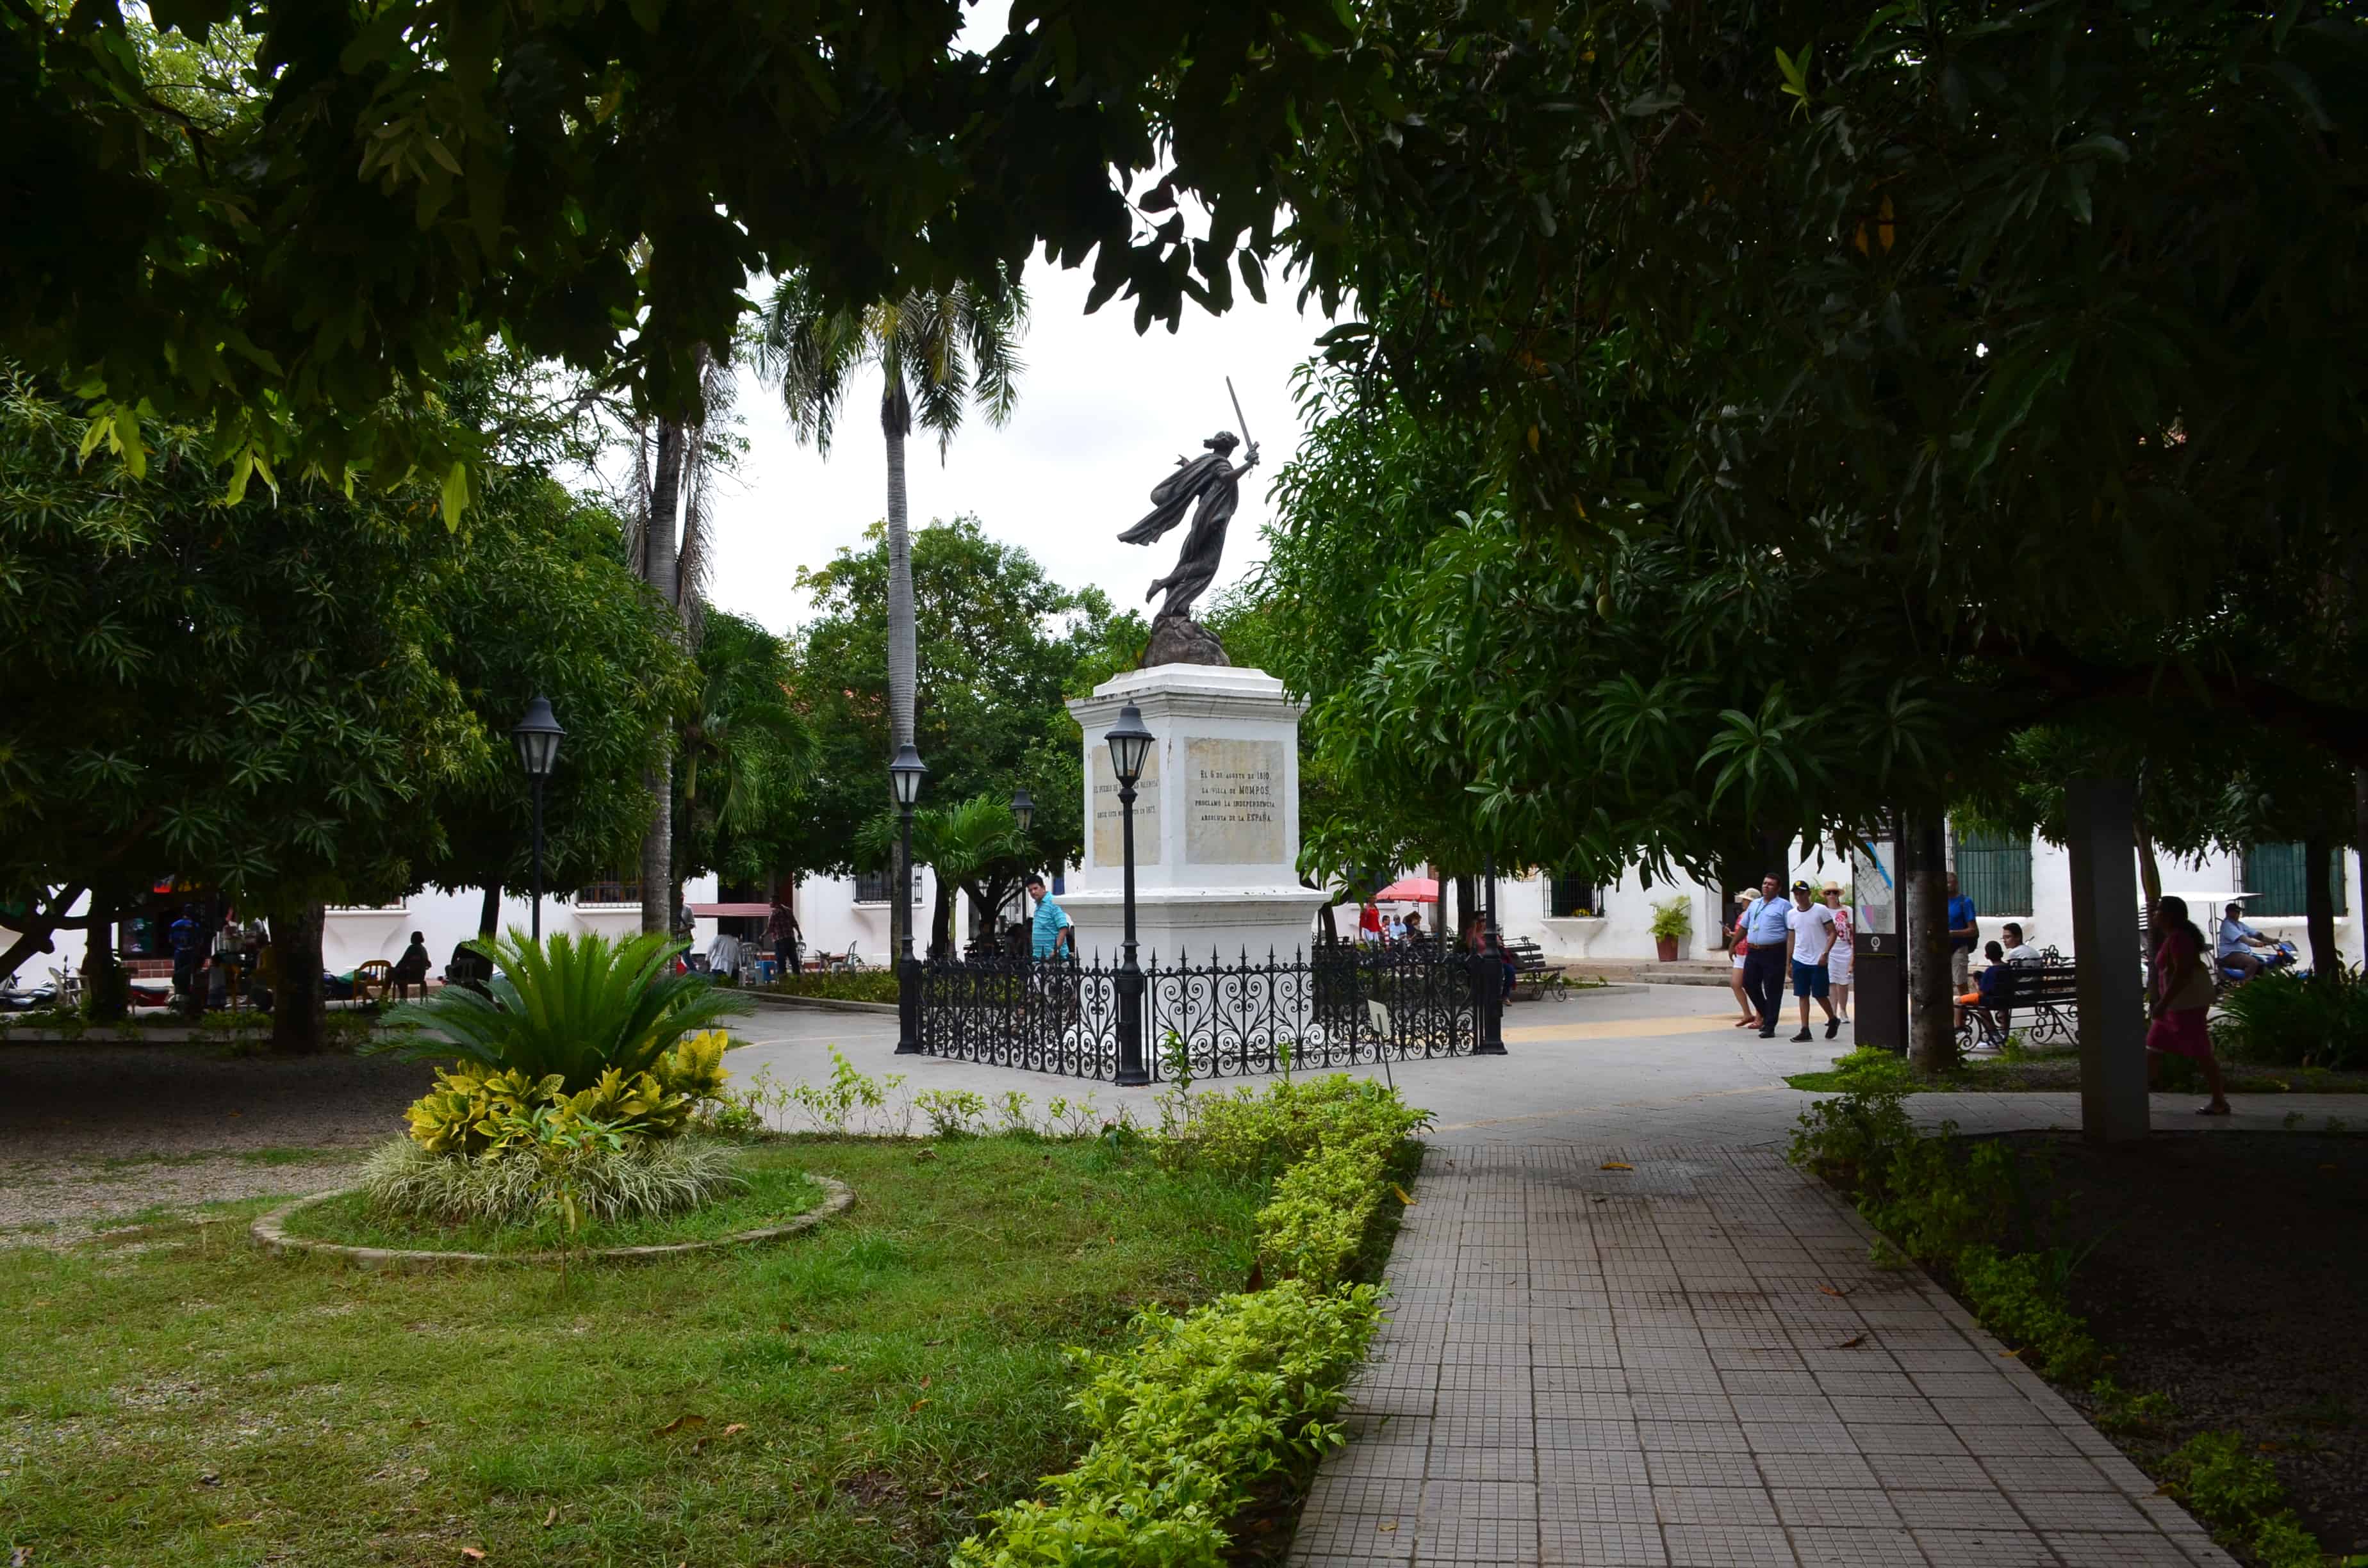 Plaza de la Libertad in Mompox, Bolívar, Colombia